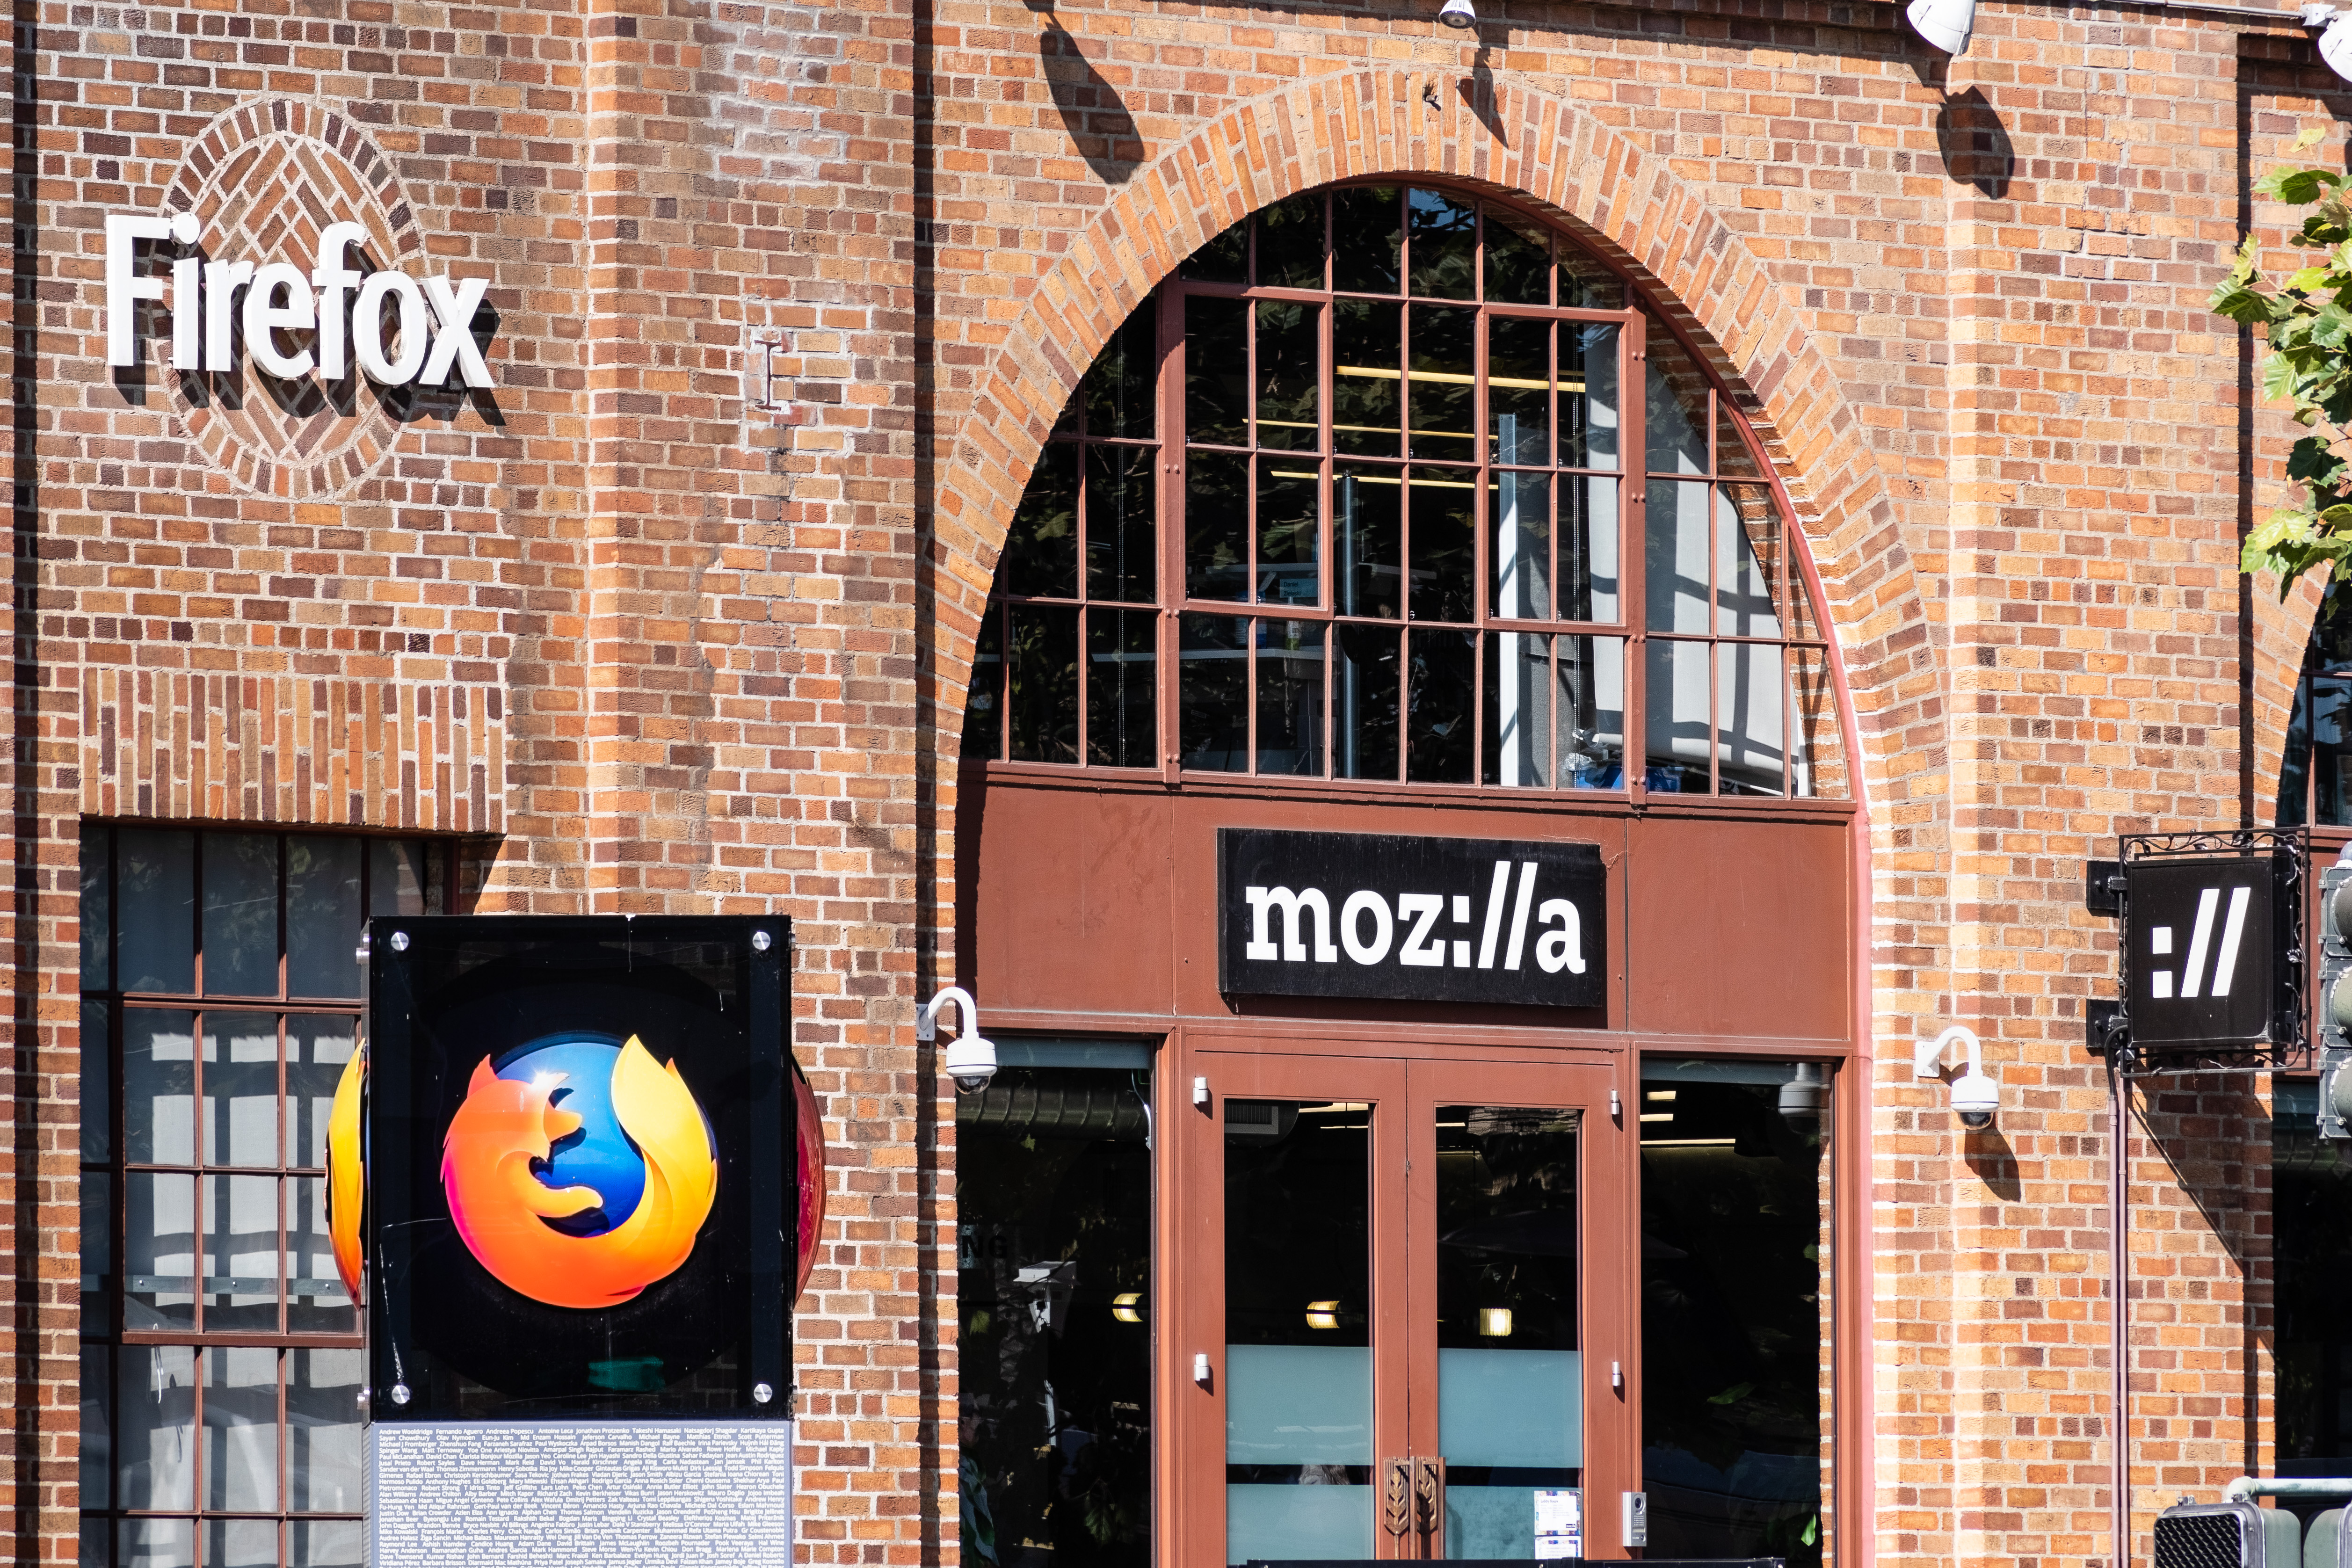 تجمع Mozilla خدمات VPN وترحيل البريد مقابل 7 دولارات شهريًا